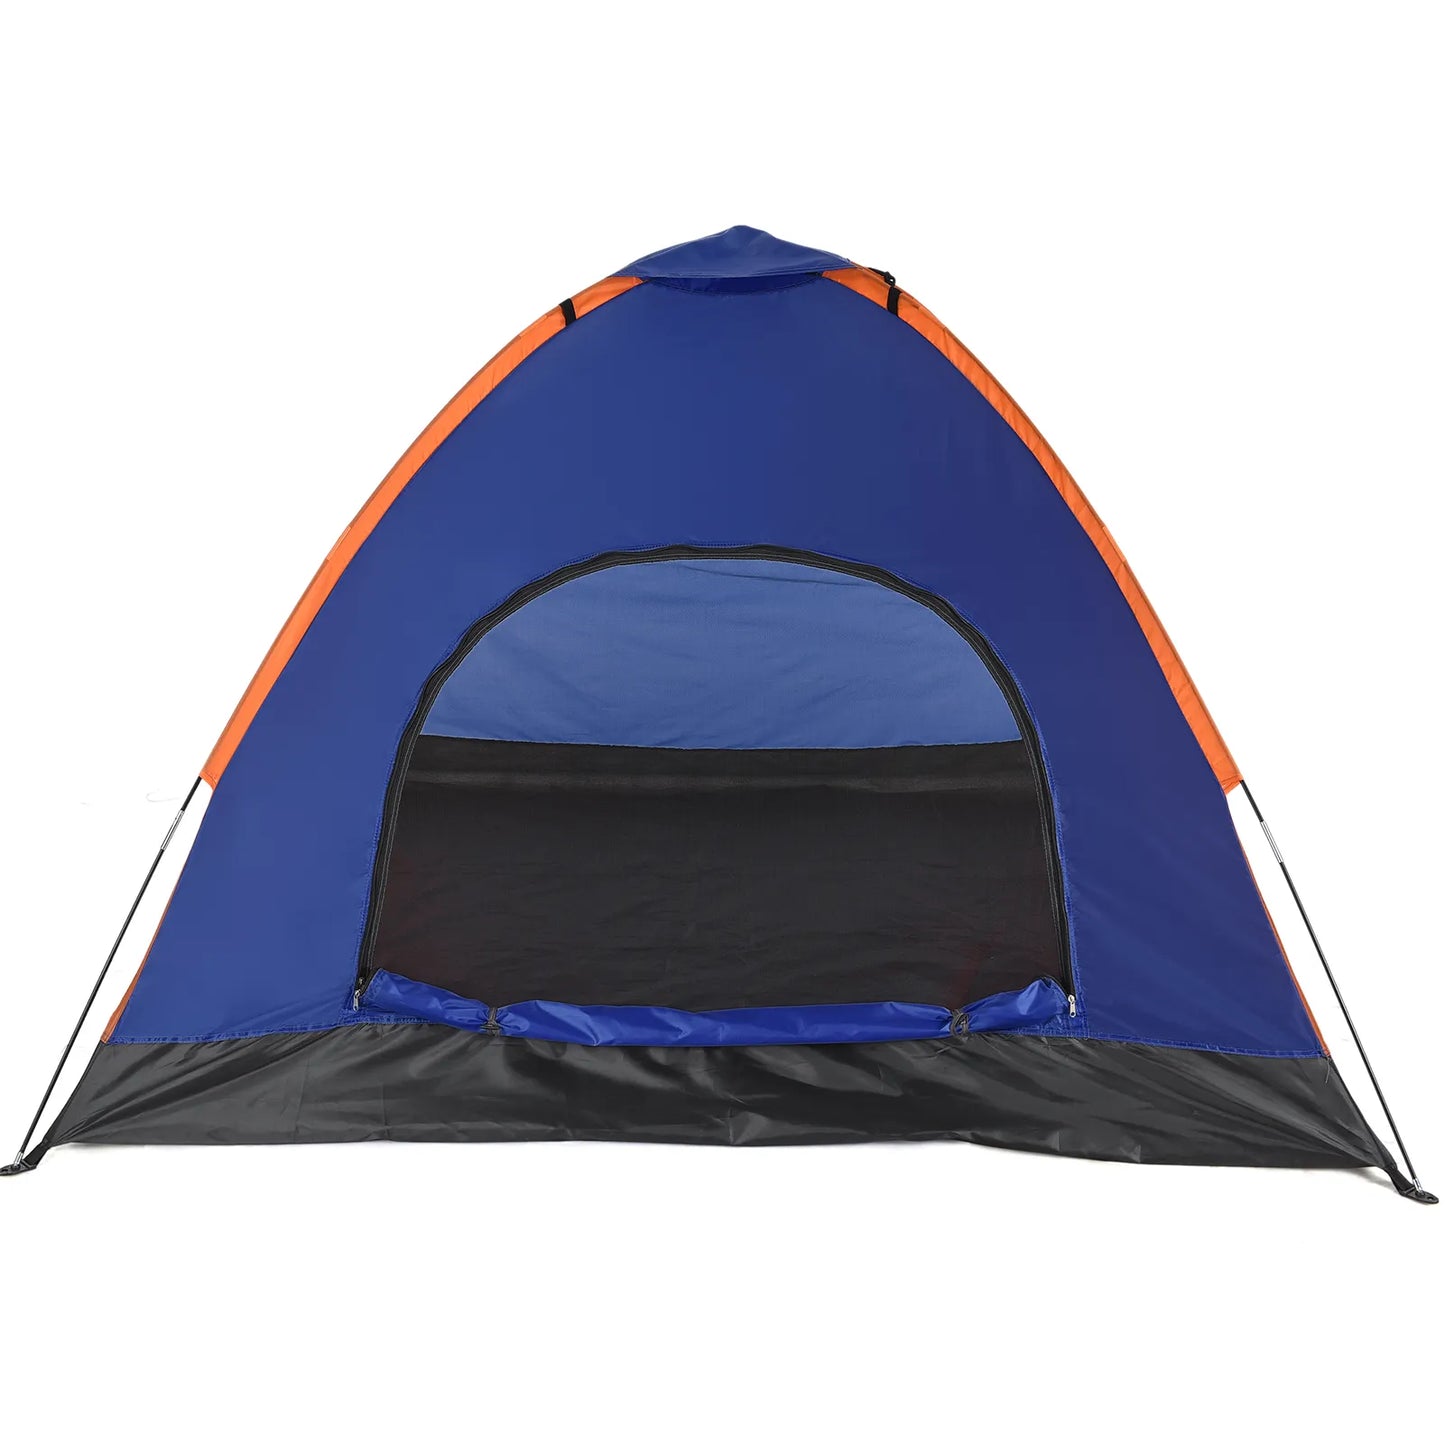 Camping Tent Lightweight